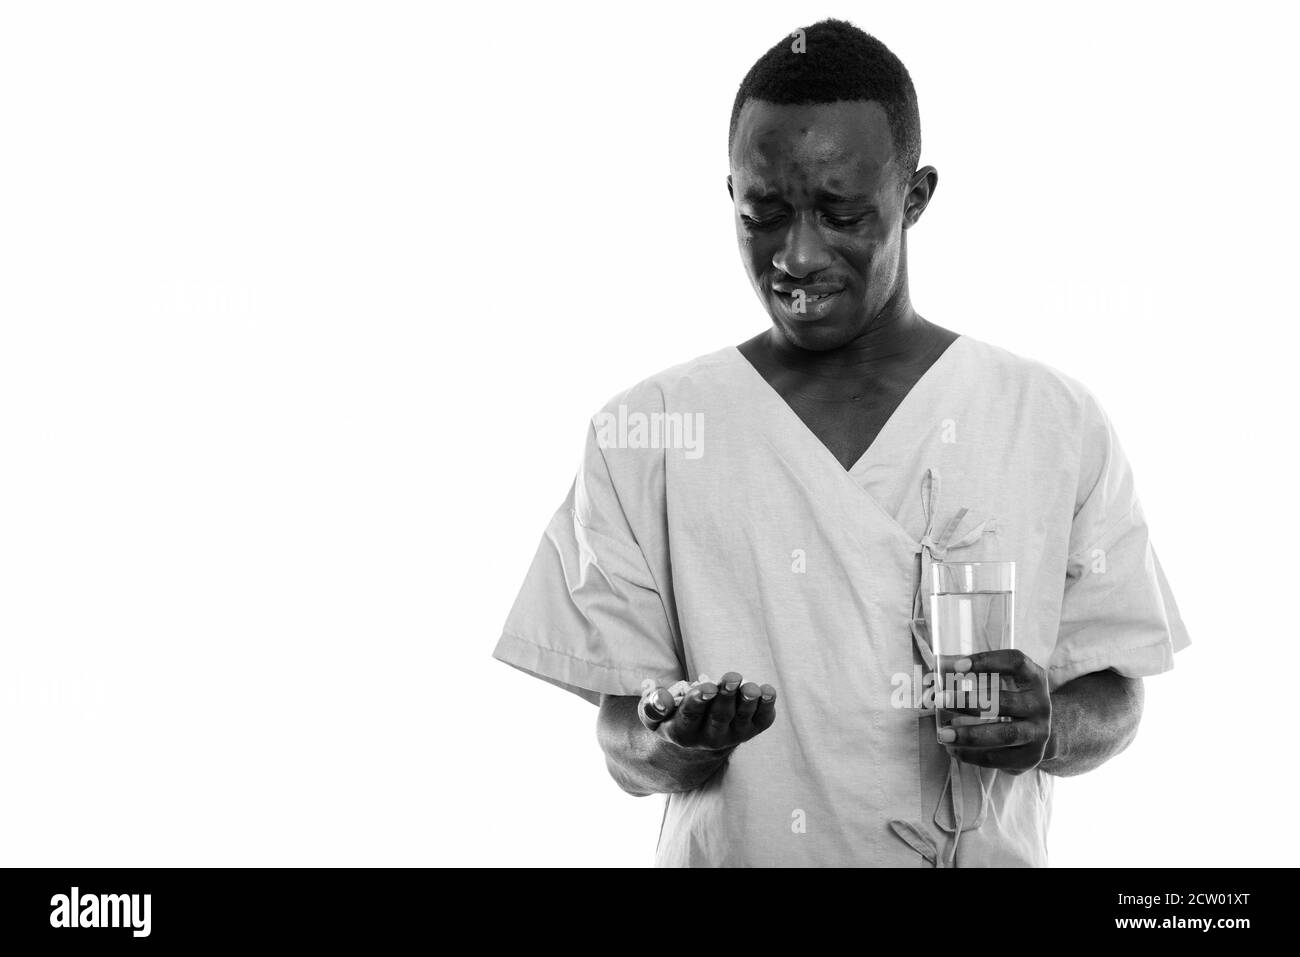 Portrait de jeune homme Africain noir dégoûté à patient et comprimés de vitamines holding glass of water Banque D'Images